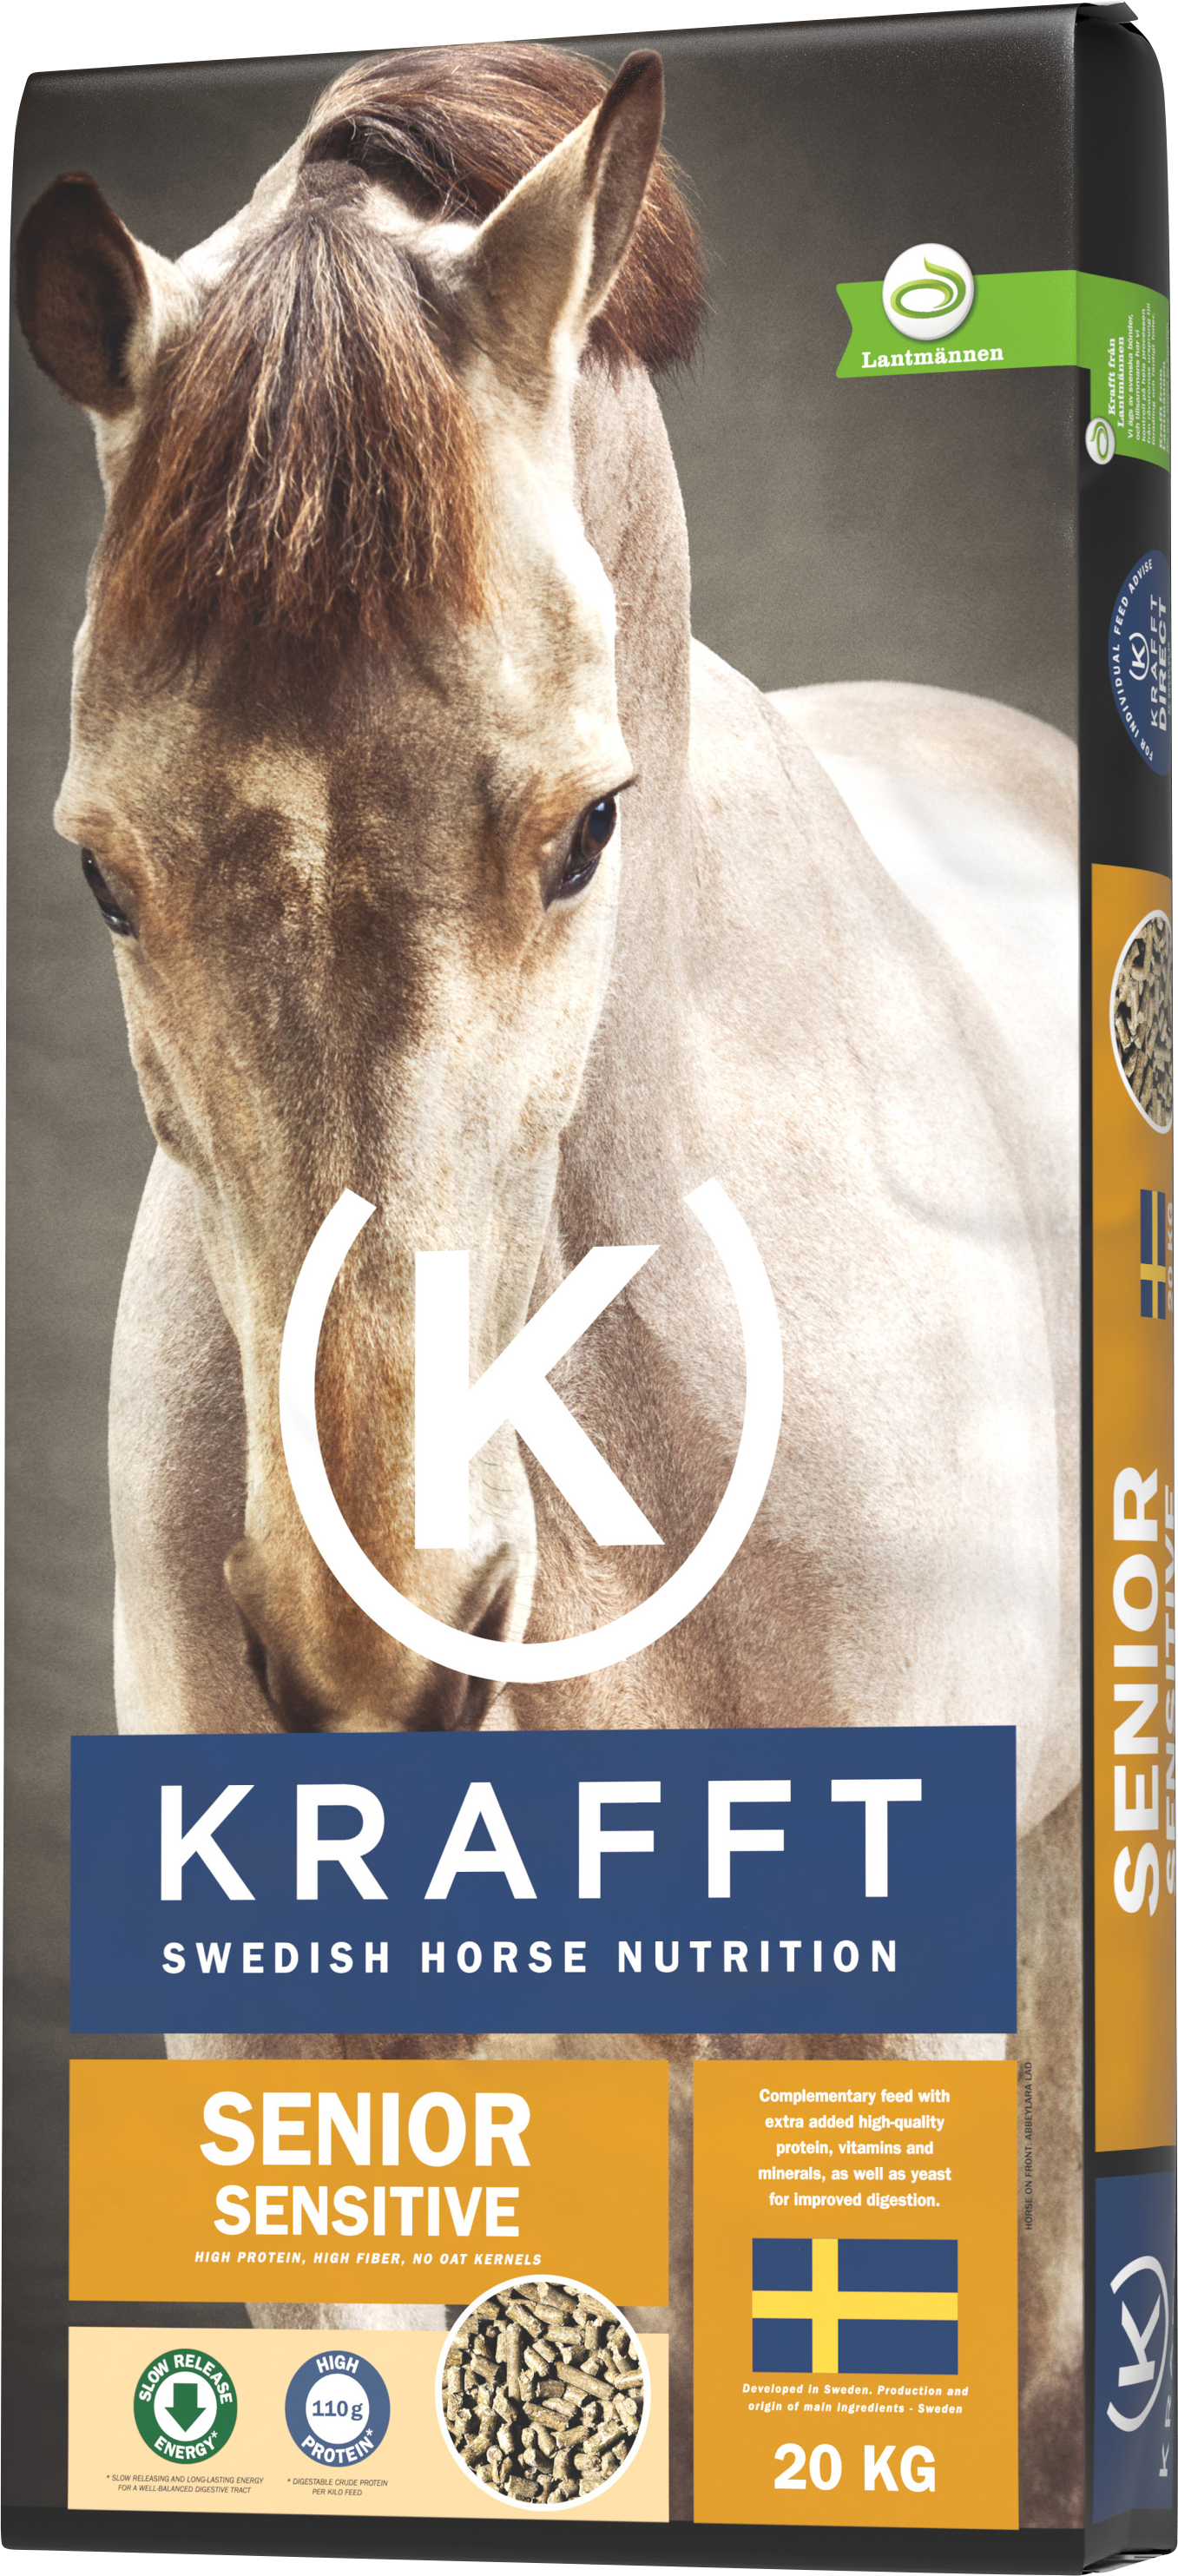 Hästfoder Krafft Senior Sensitive 20kg